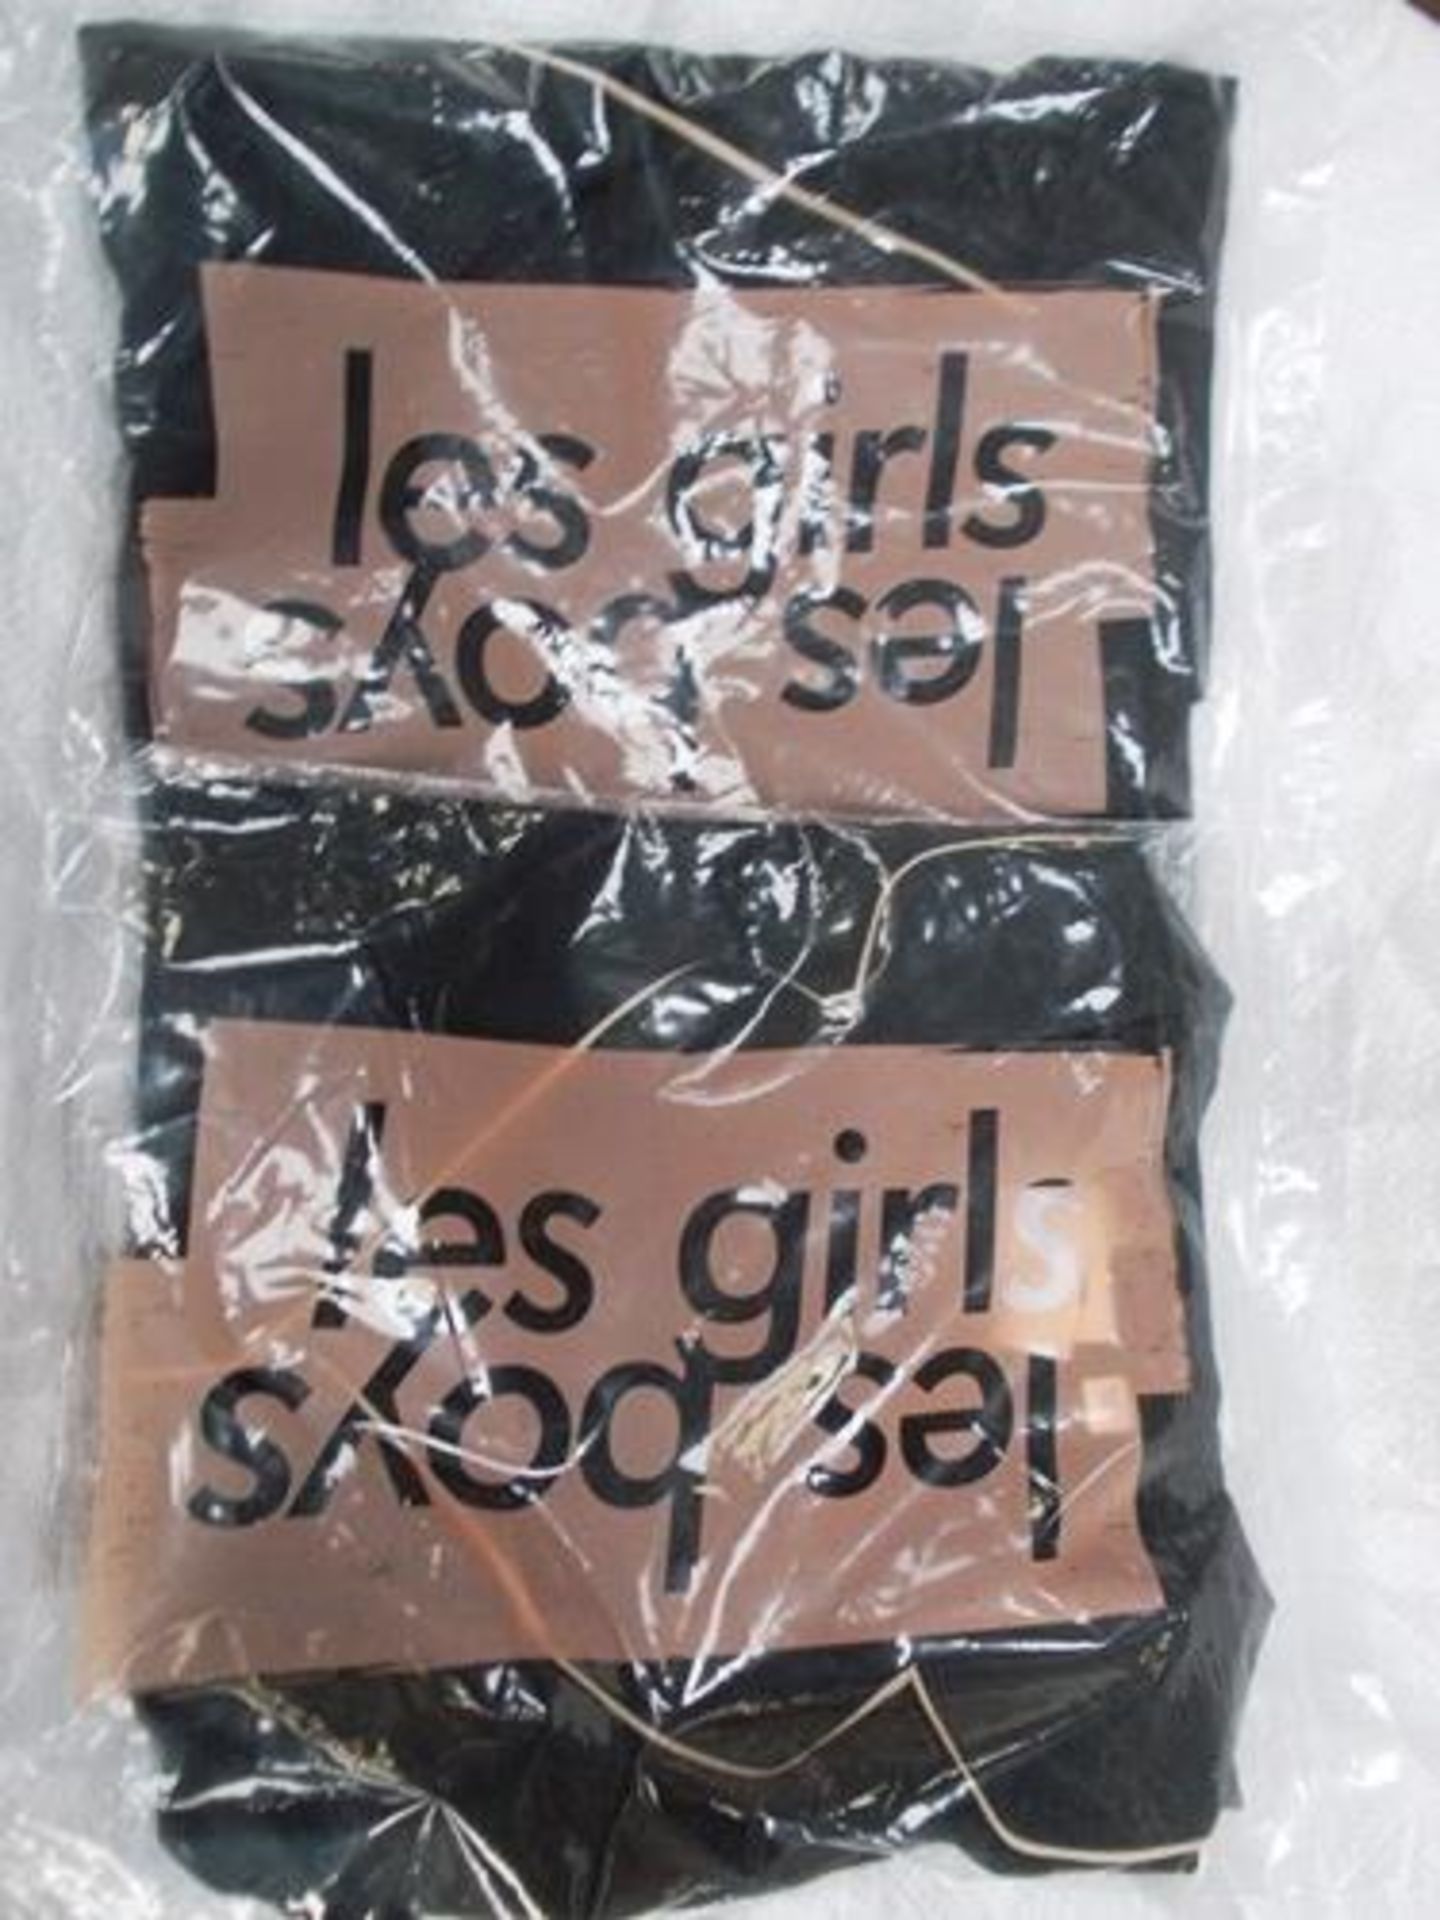 2 x pairs of Les Girls Les Boys pyjamas, size M & L - New (E7flr7) - Image 2 of 2